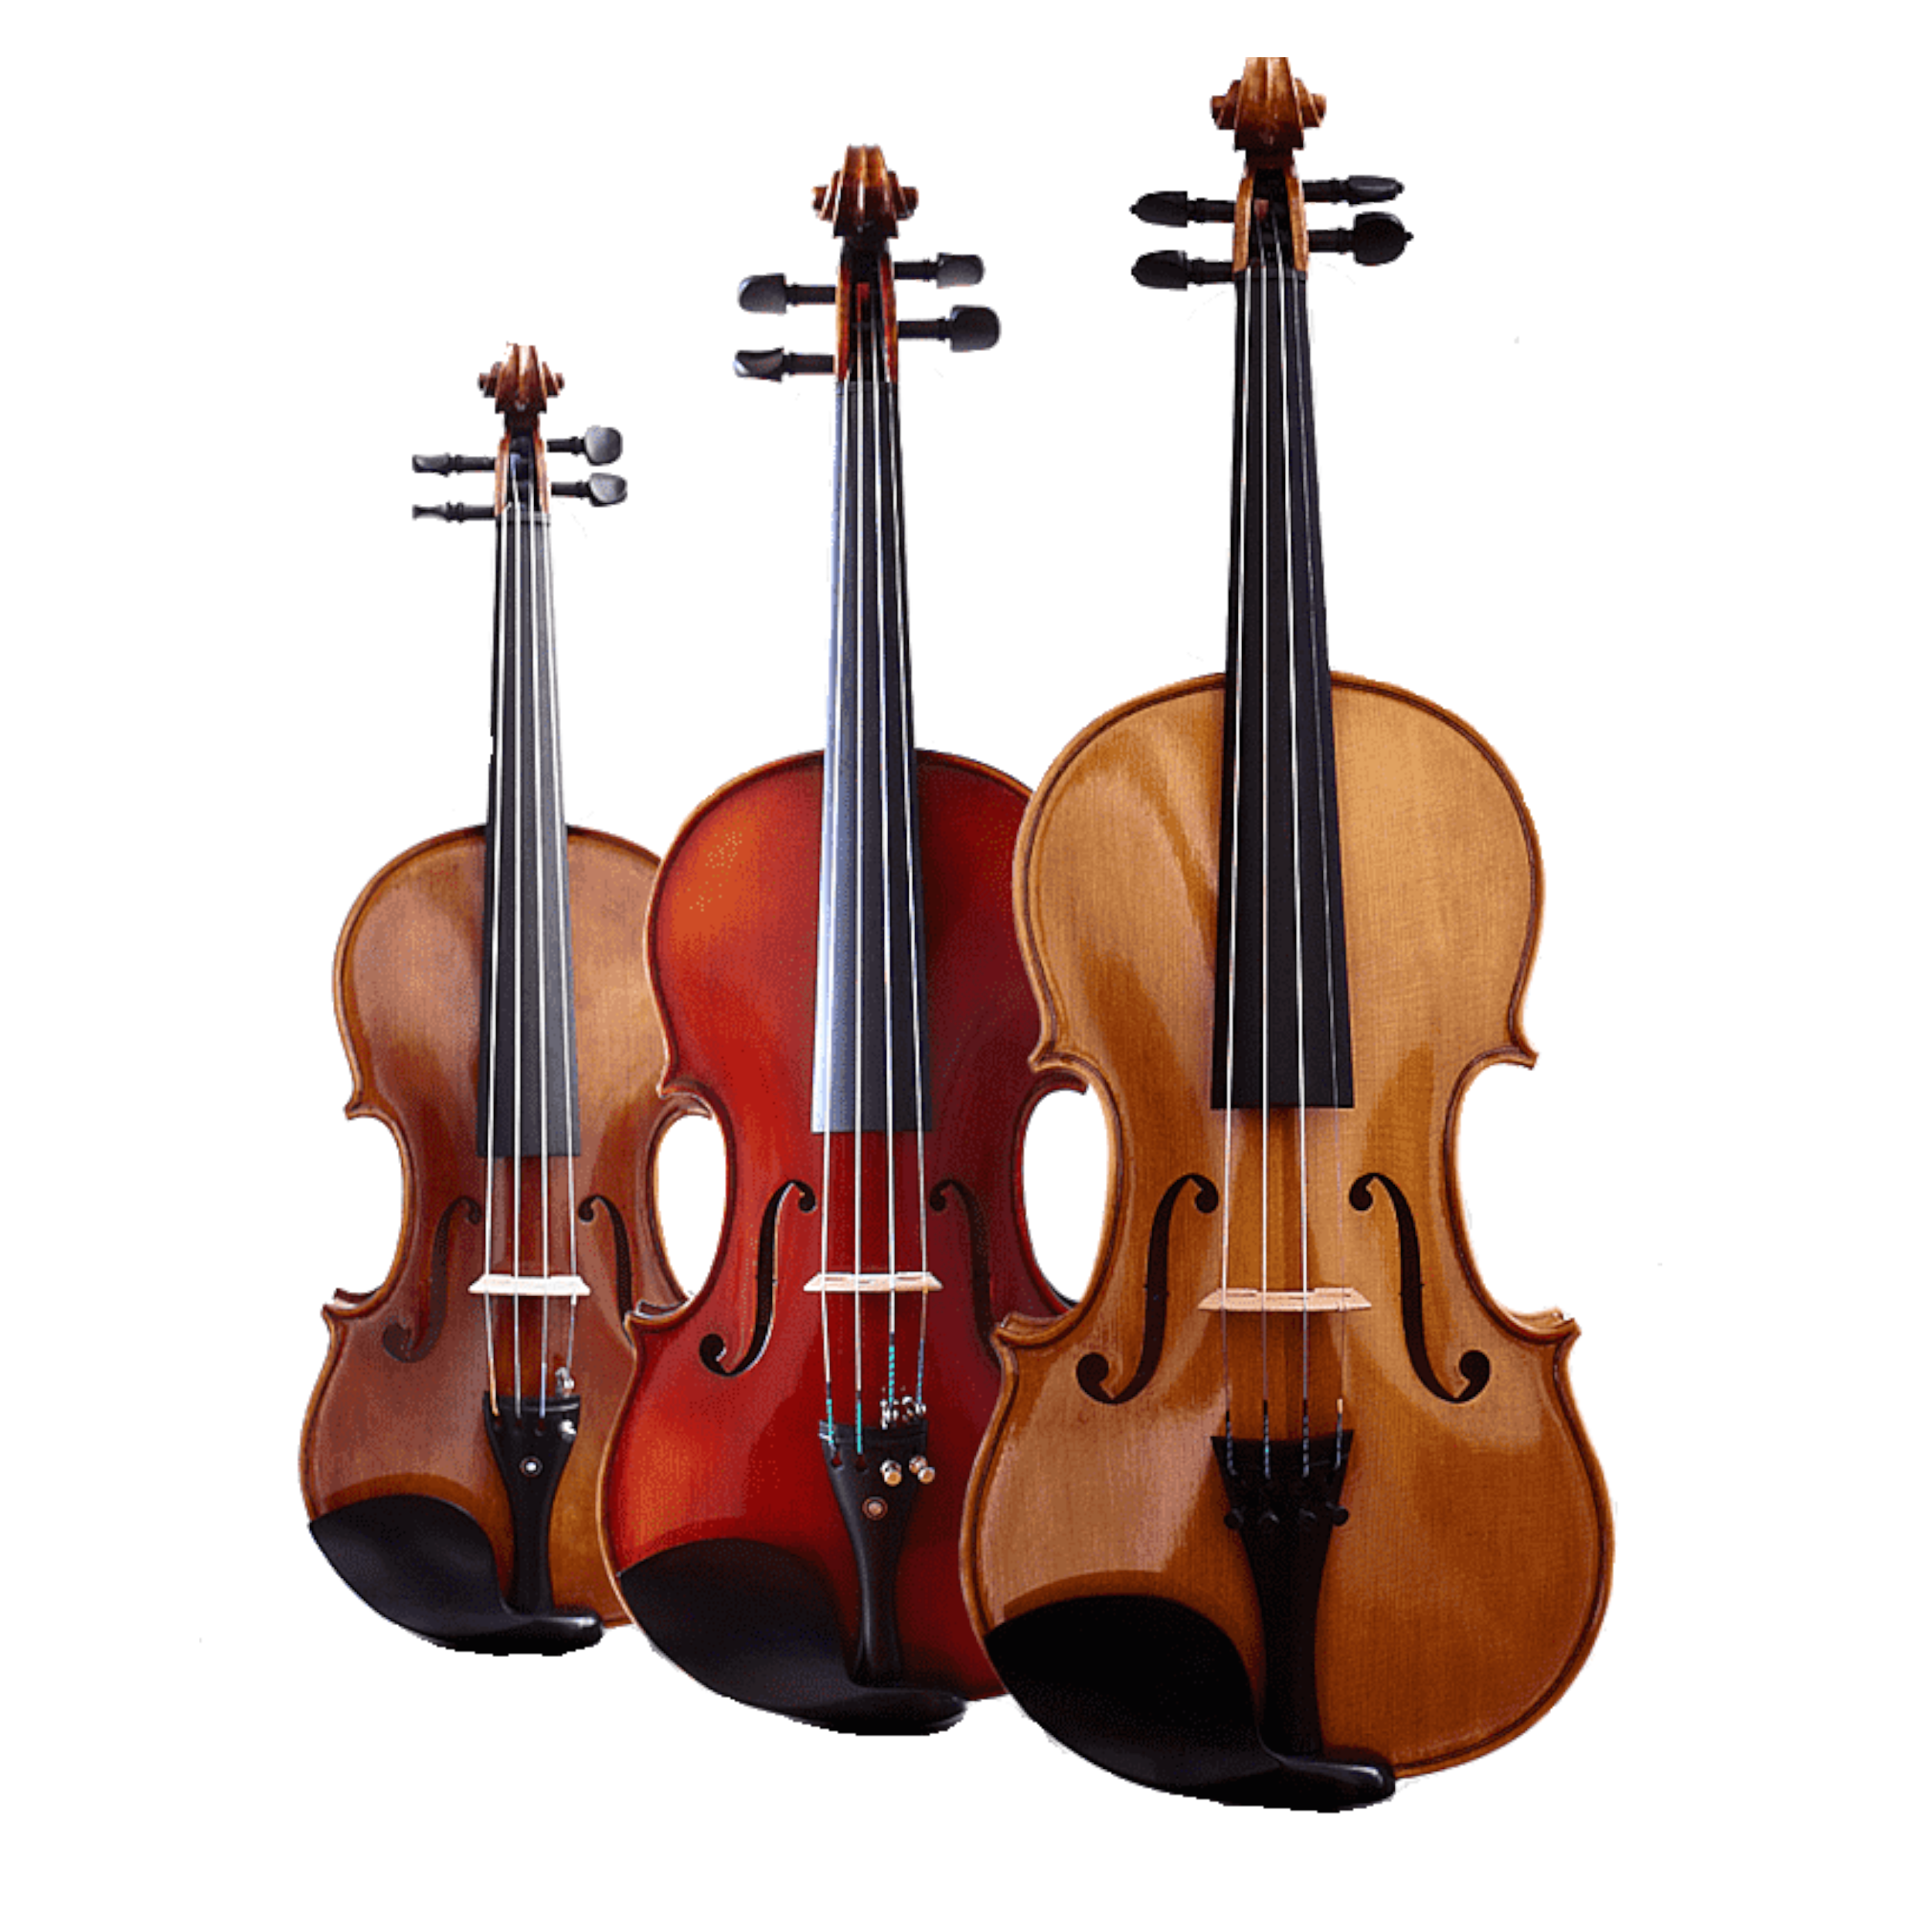 Violin cello. Виолончель это струнно смычковый инструмент. Контрабас струнные смычковые музыкальные инструменты. Альт струнные смычковые музыкальные инструменты. Виолончель струнные смычковые музыкальные инструменты.